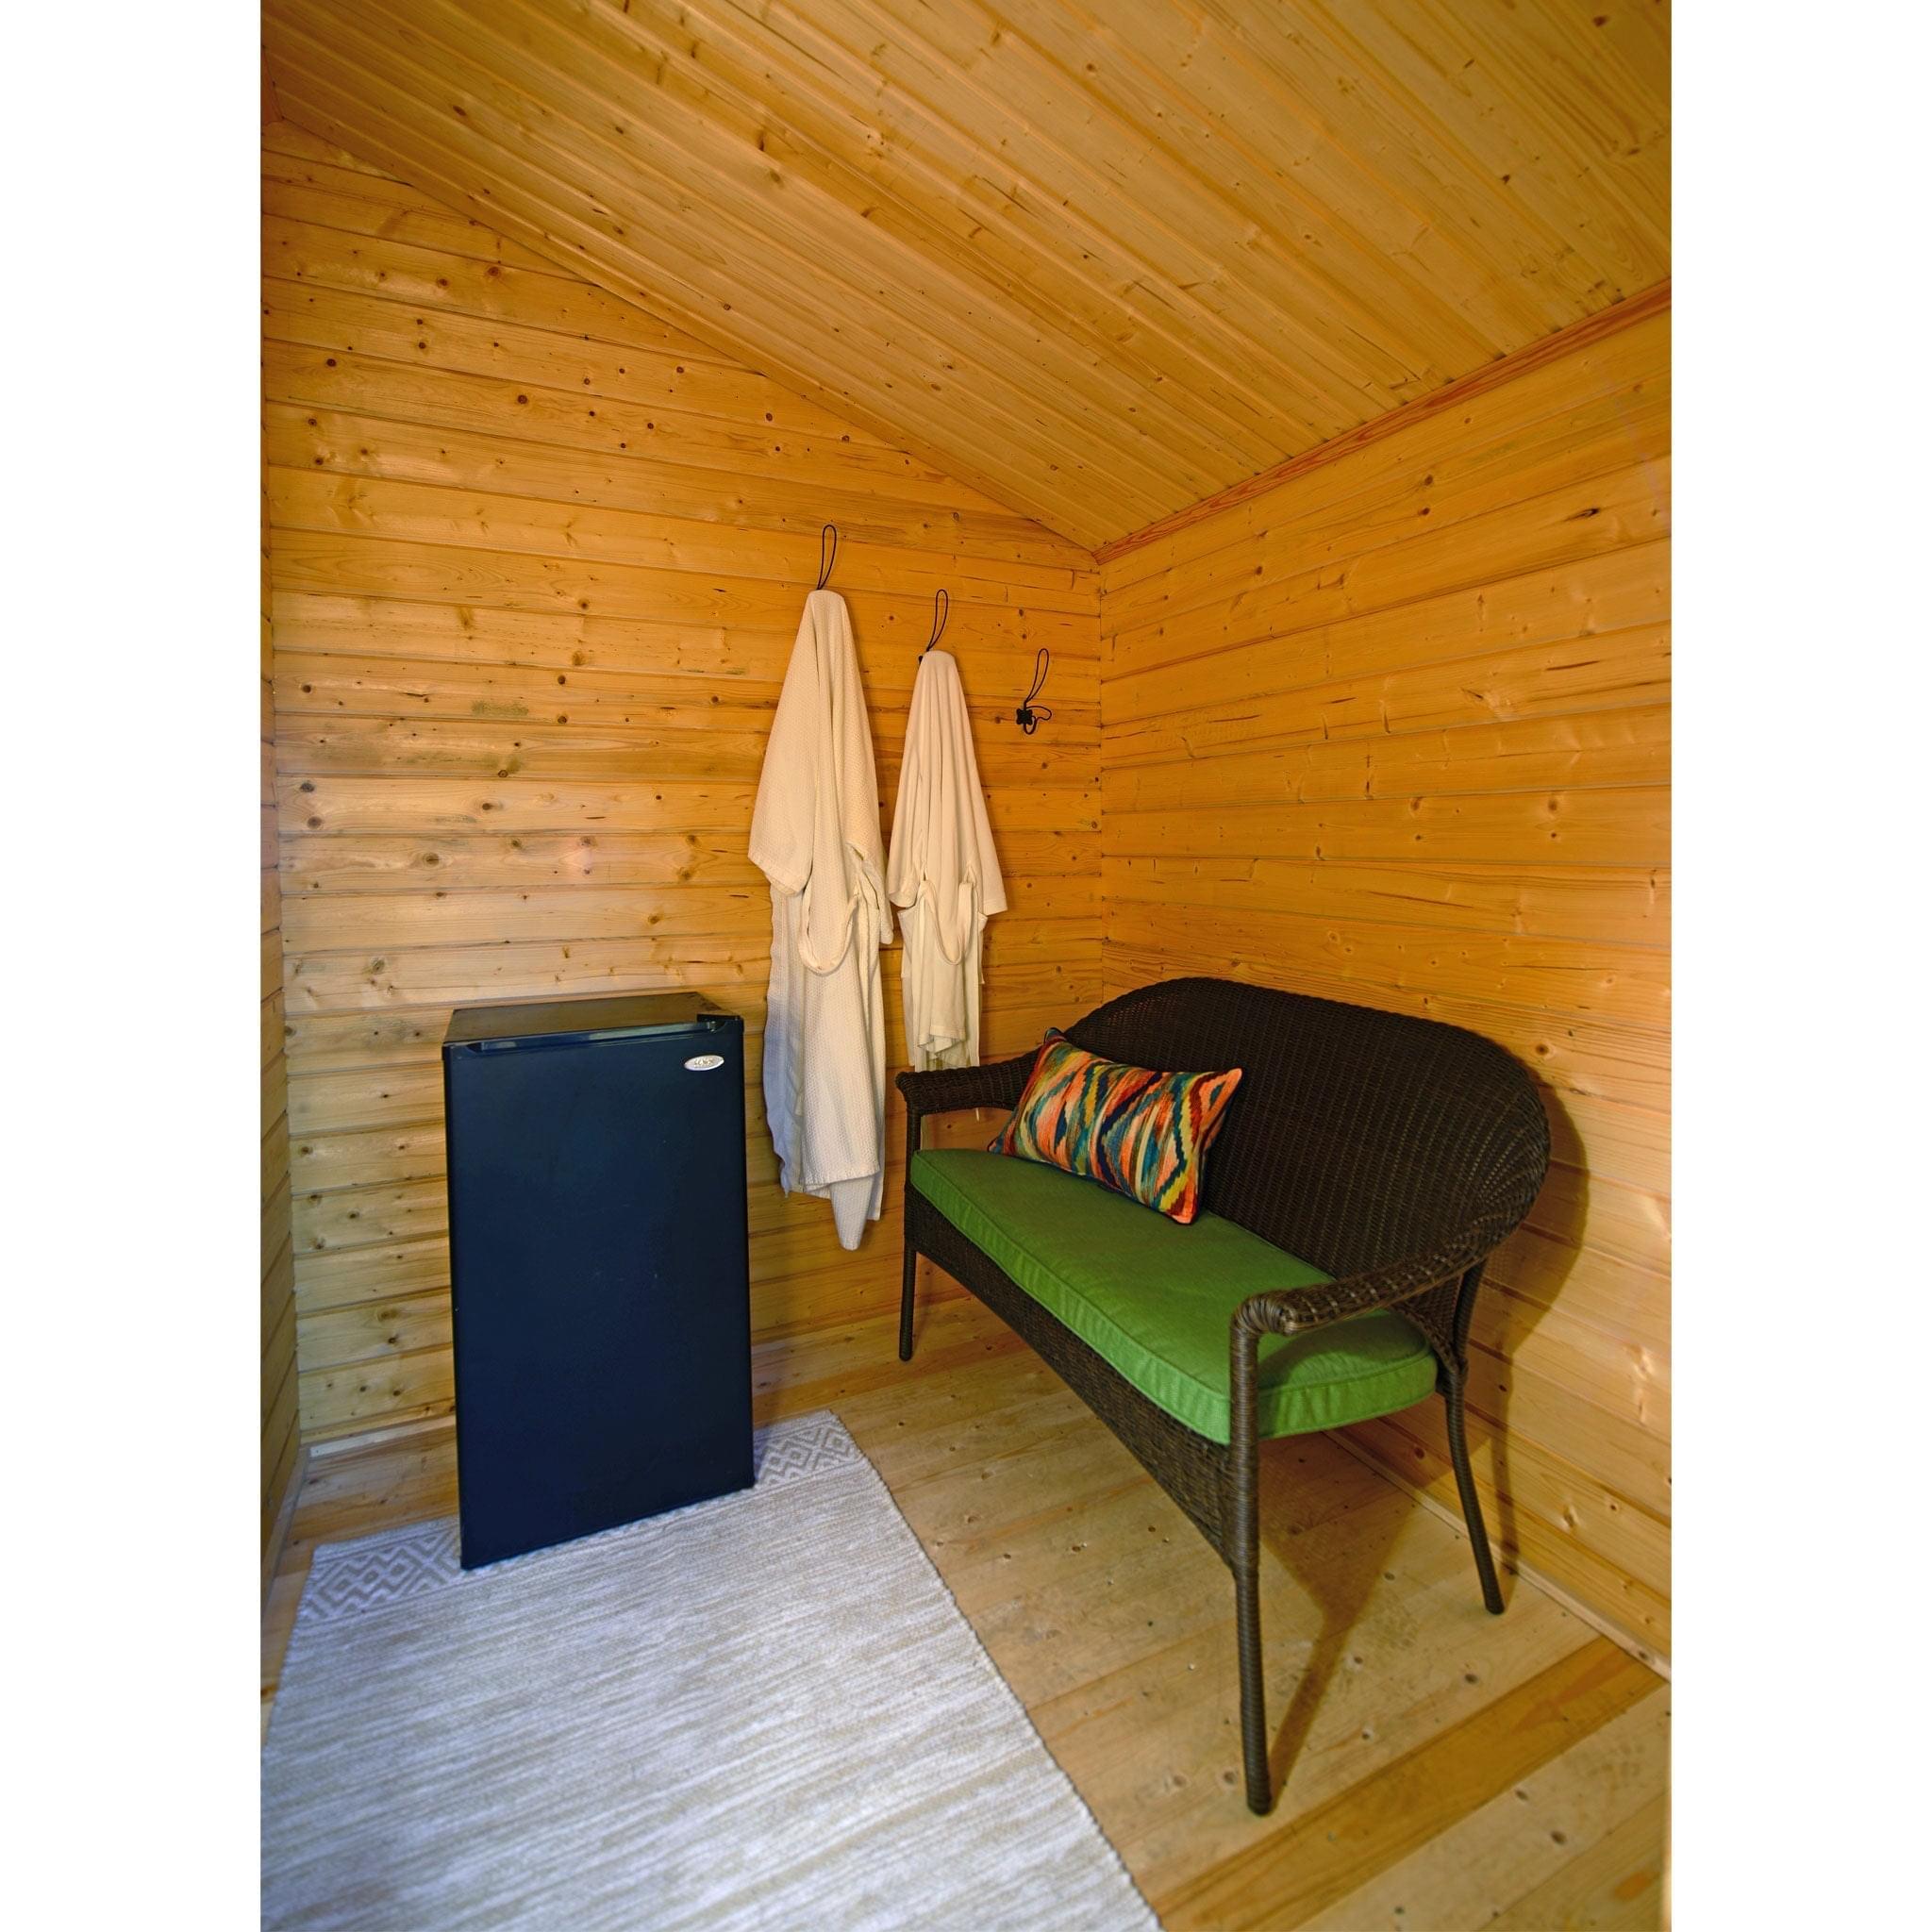 Almost Heaven Appalachia 6-Person Outdoor Cabin Sauna